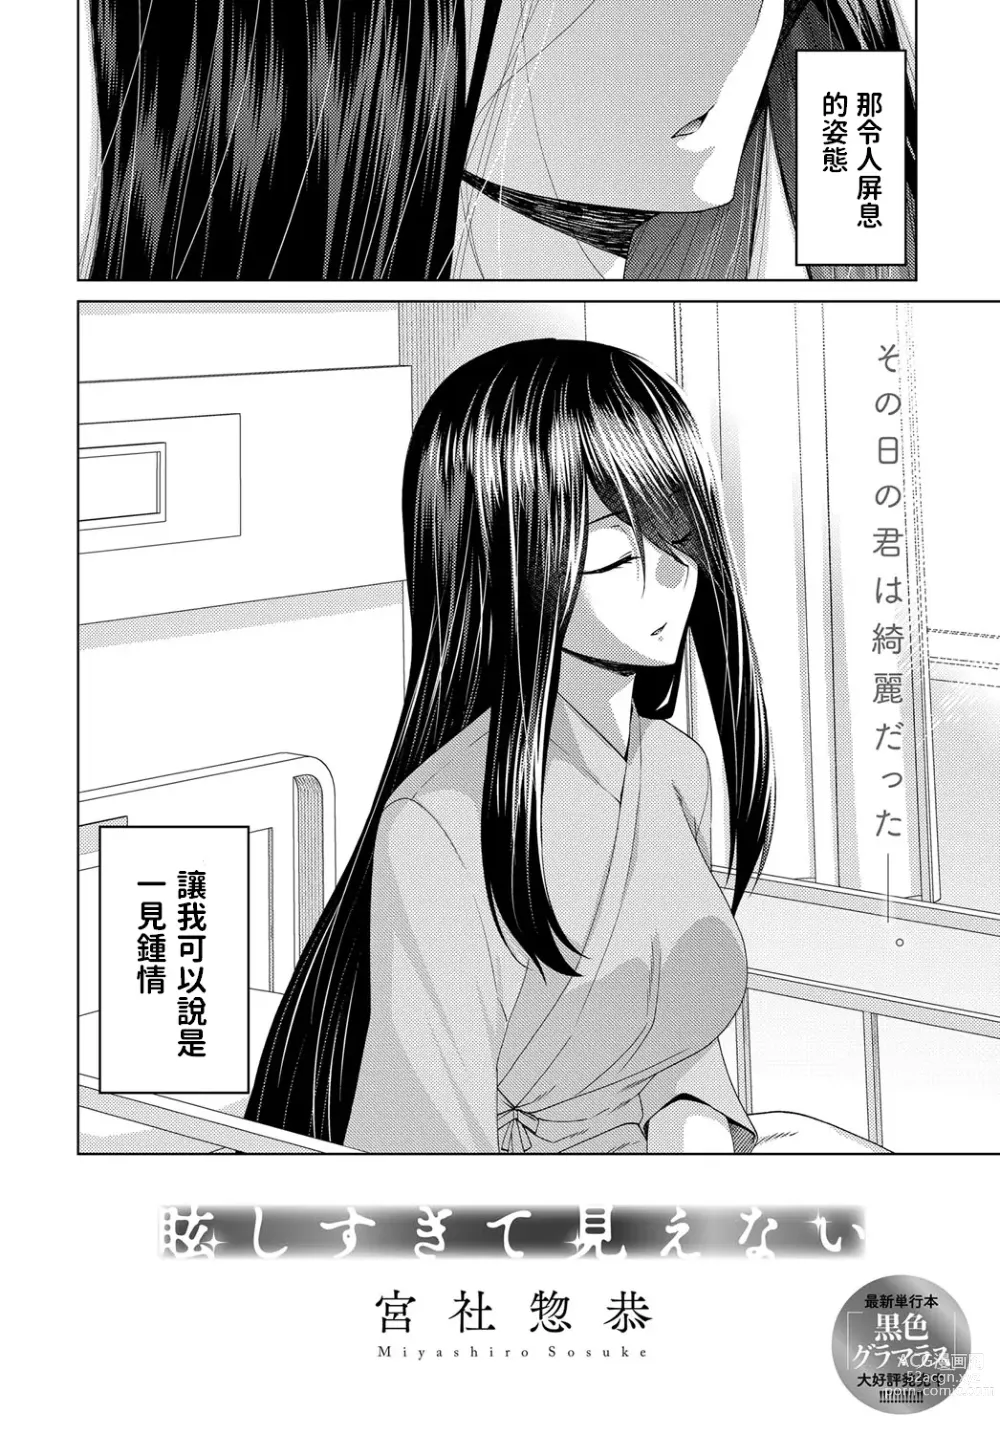 Page 2 of manga Mabushi Sugite Mienai